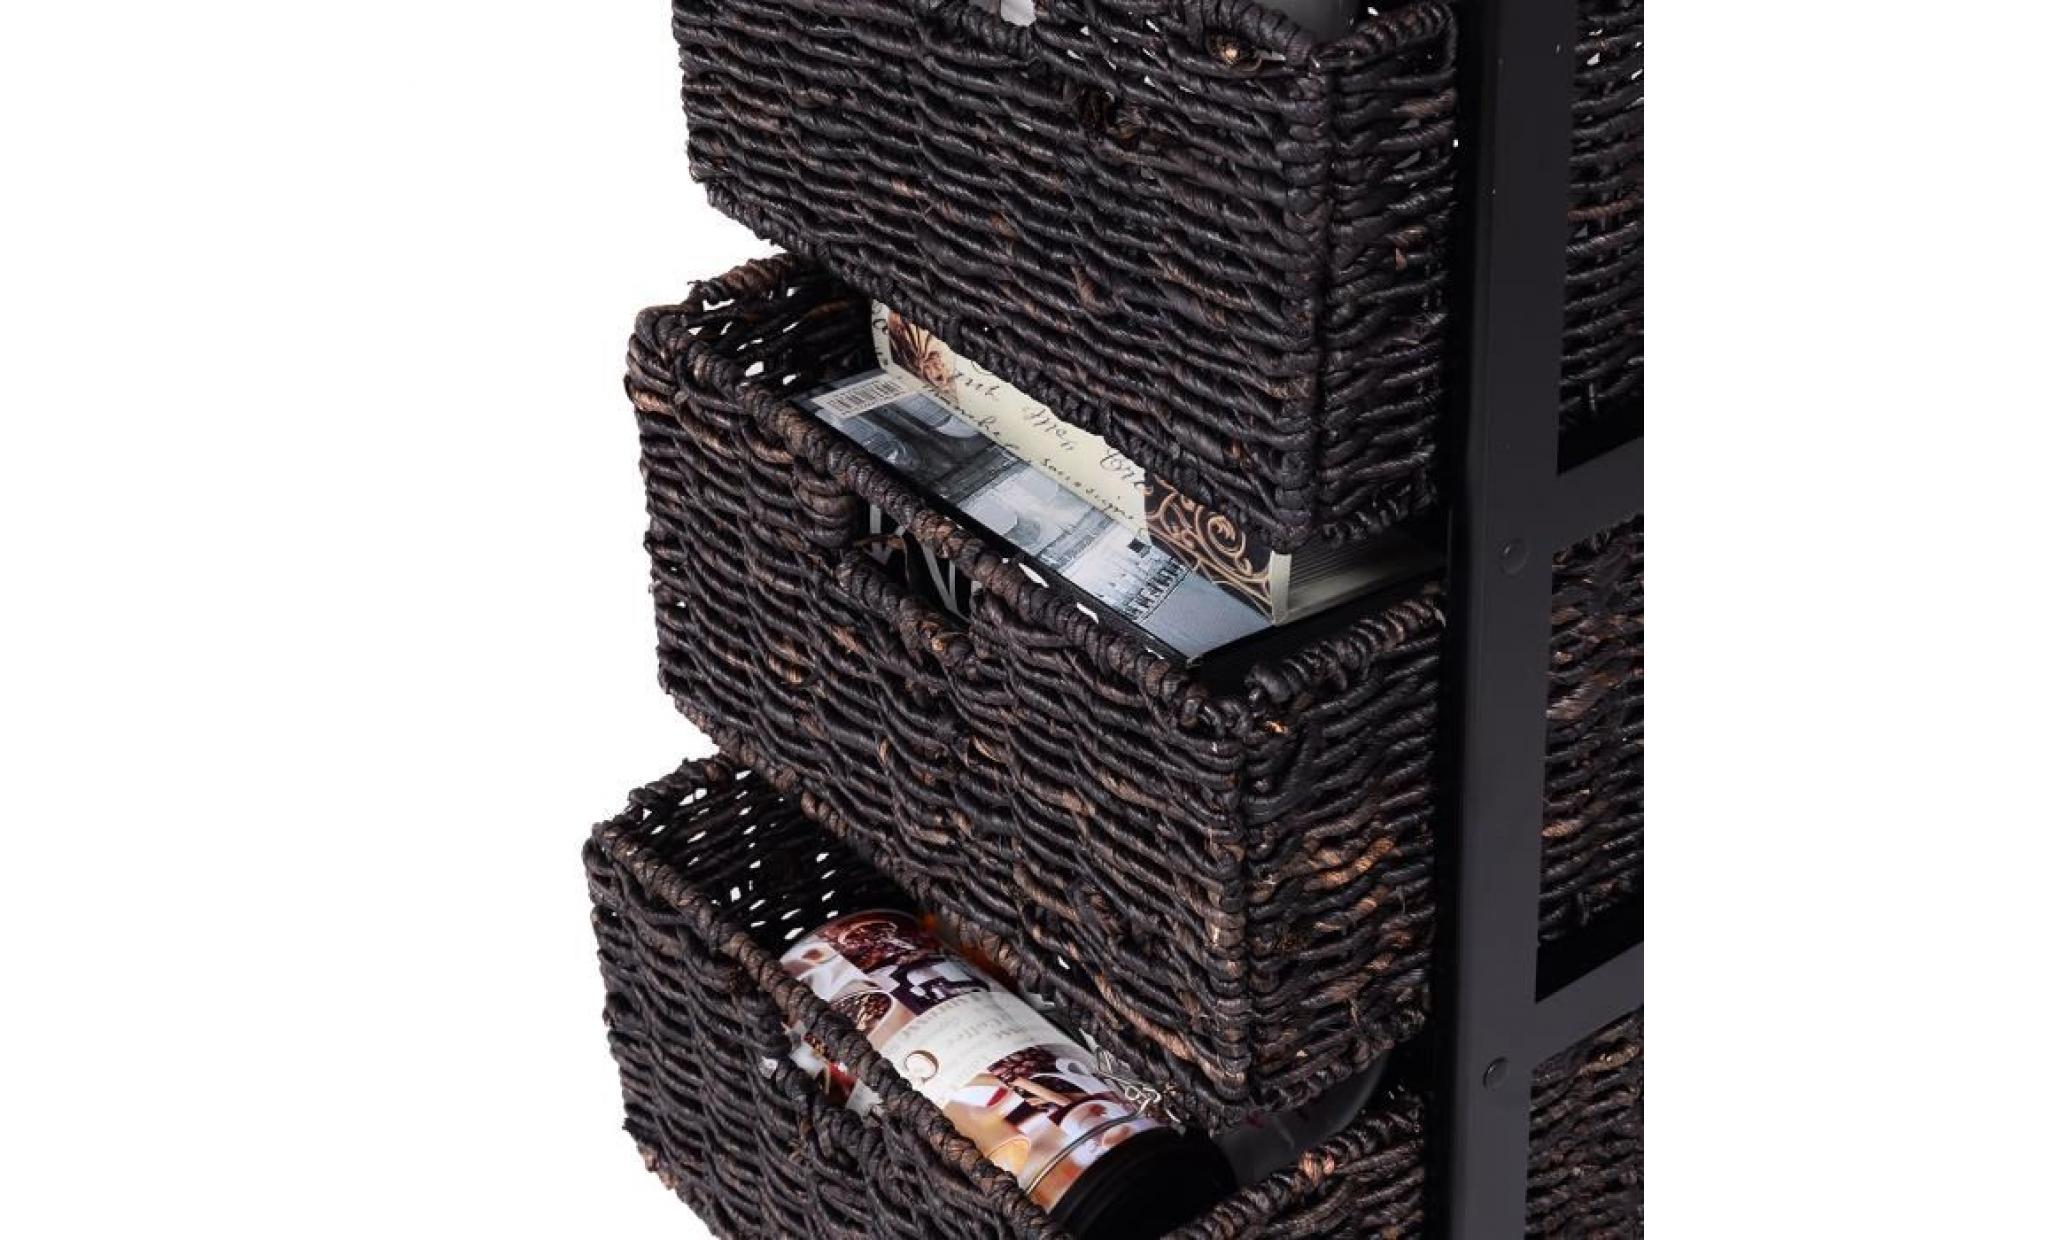 costway chiffonnier commode avec 3 tiroirs tour de rangement en bois table de chevet noir en pin+mdf 42,5 x 31,5 x 72,5 cm pas cher